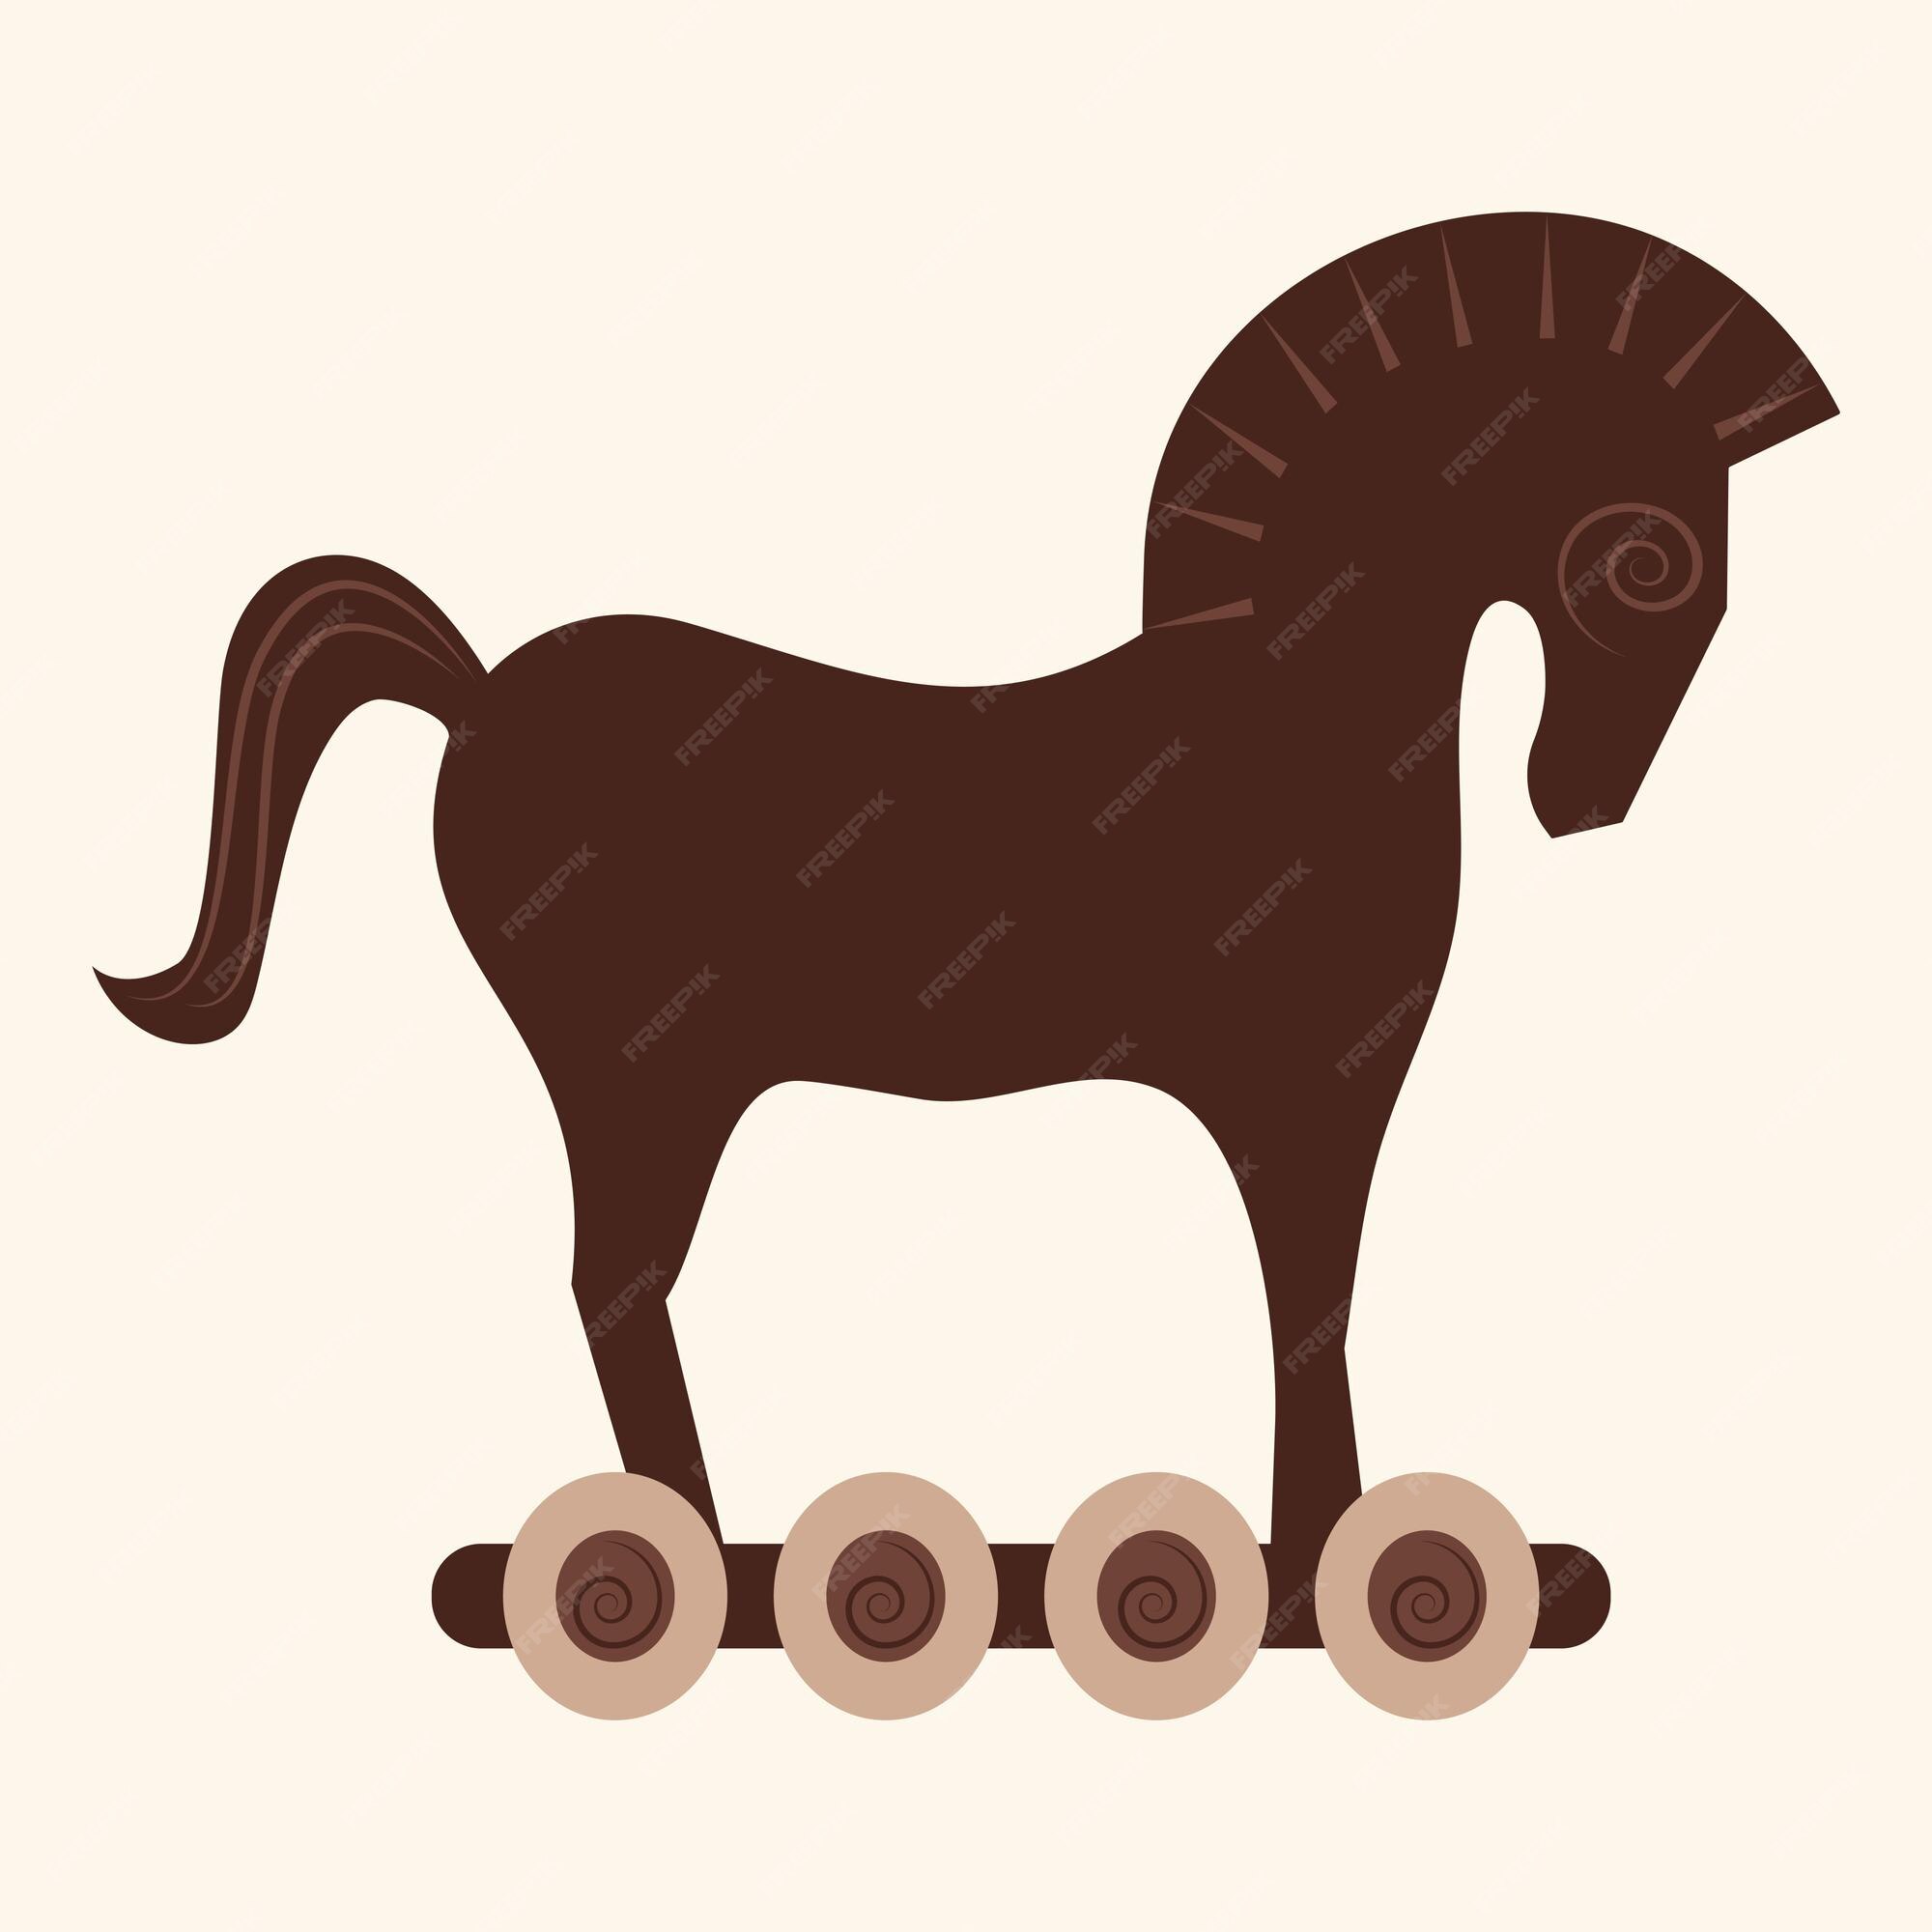 Cavalo de tróia - ícones de diversos grátis